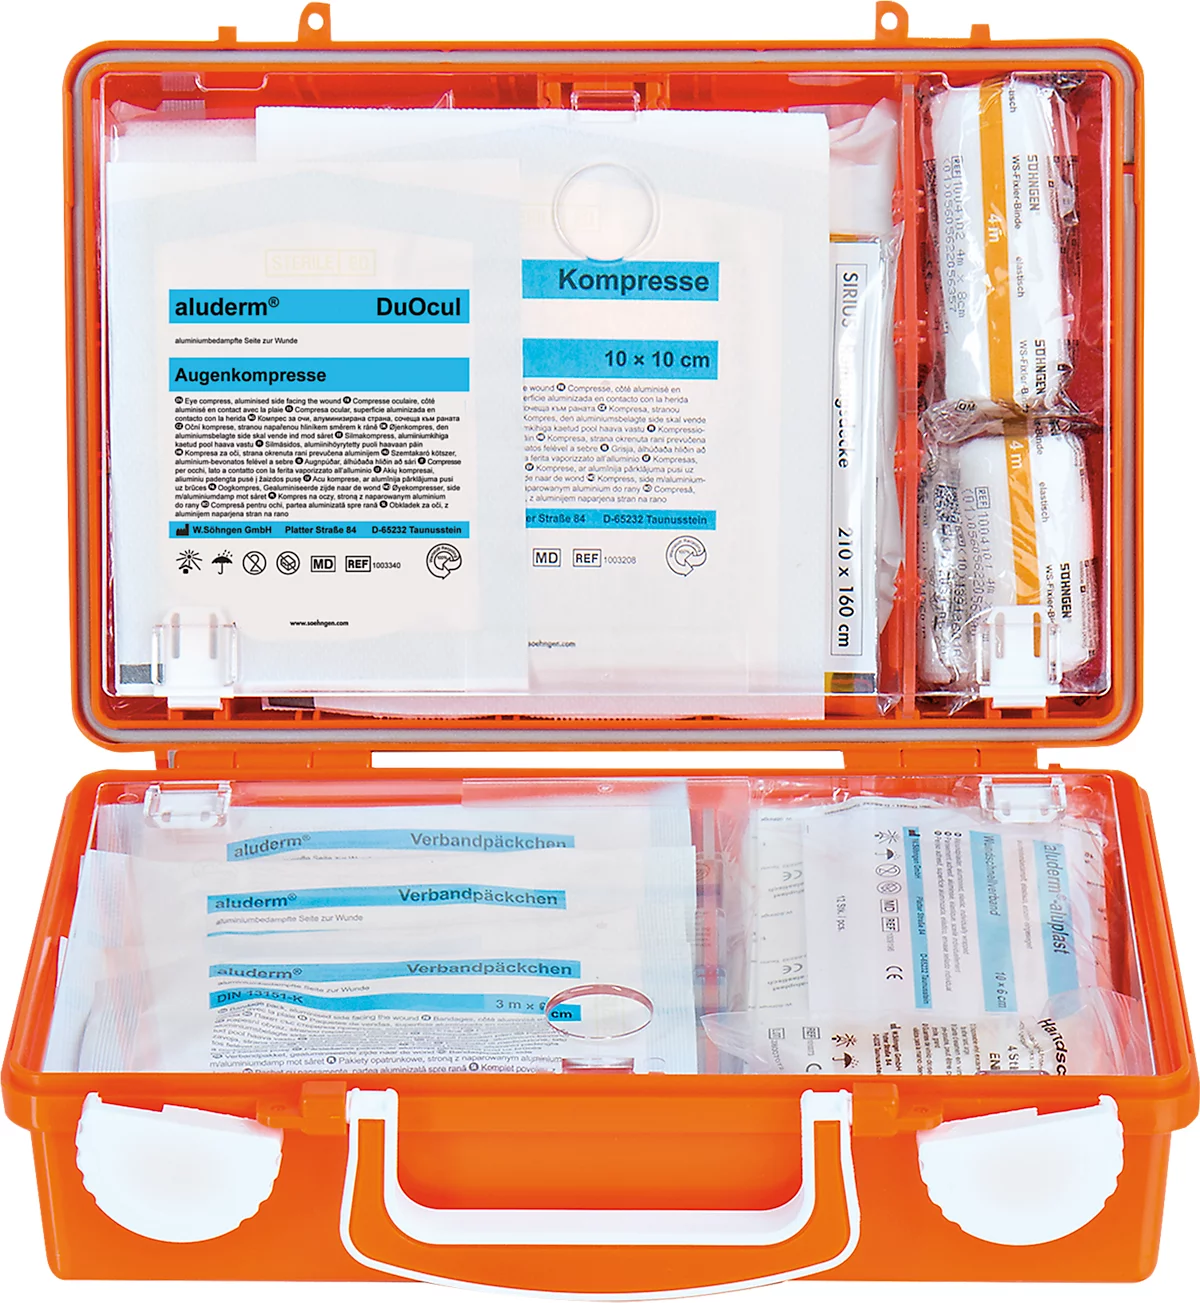 Erste-Hilfe-Koffer SÖHNGEN® QUICK, Inhalt gemäß DIN 13 157, mit Inneneinteilung & Wandhalterung, L 260 x B 170 x H 110 mm, ABS-Kunststoff, orange